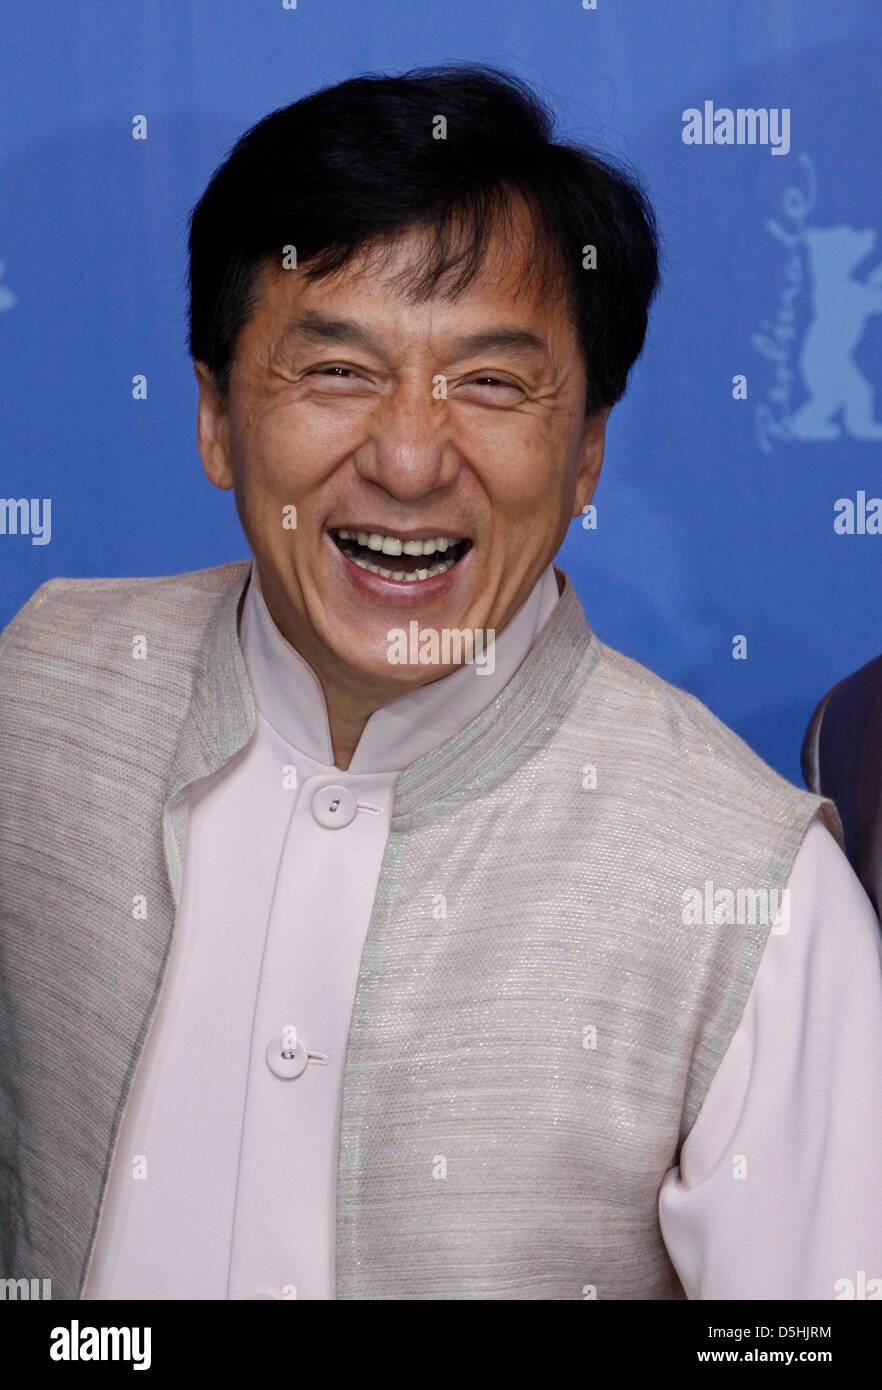 Schauspieler Jackie Chan besucht die Photocall zum Film "Little Big Soldier" läuft in das Berlinale Special während der 60. Berlinale Internationalen Filmfestspiele in Berlin, Deutschland, 16. Februar 2010. Das Festival dauert bis 21 Februar 2010. Foto: Hubert Boesl Stockfoto